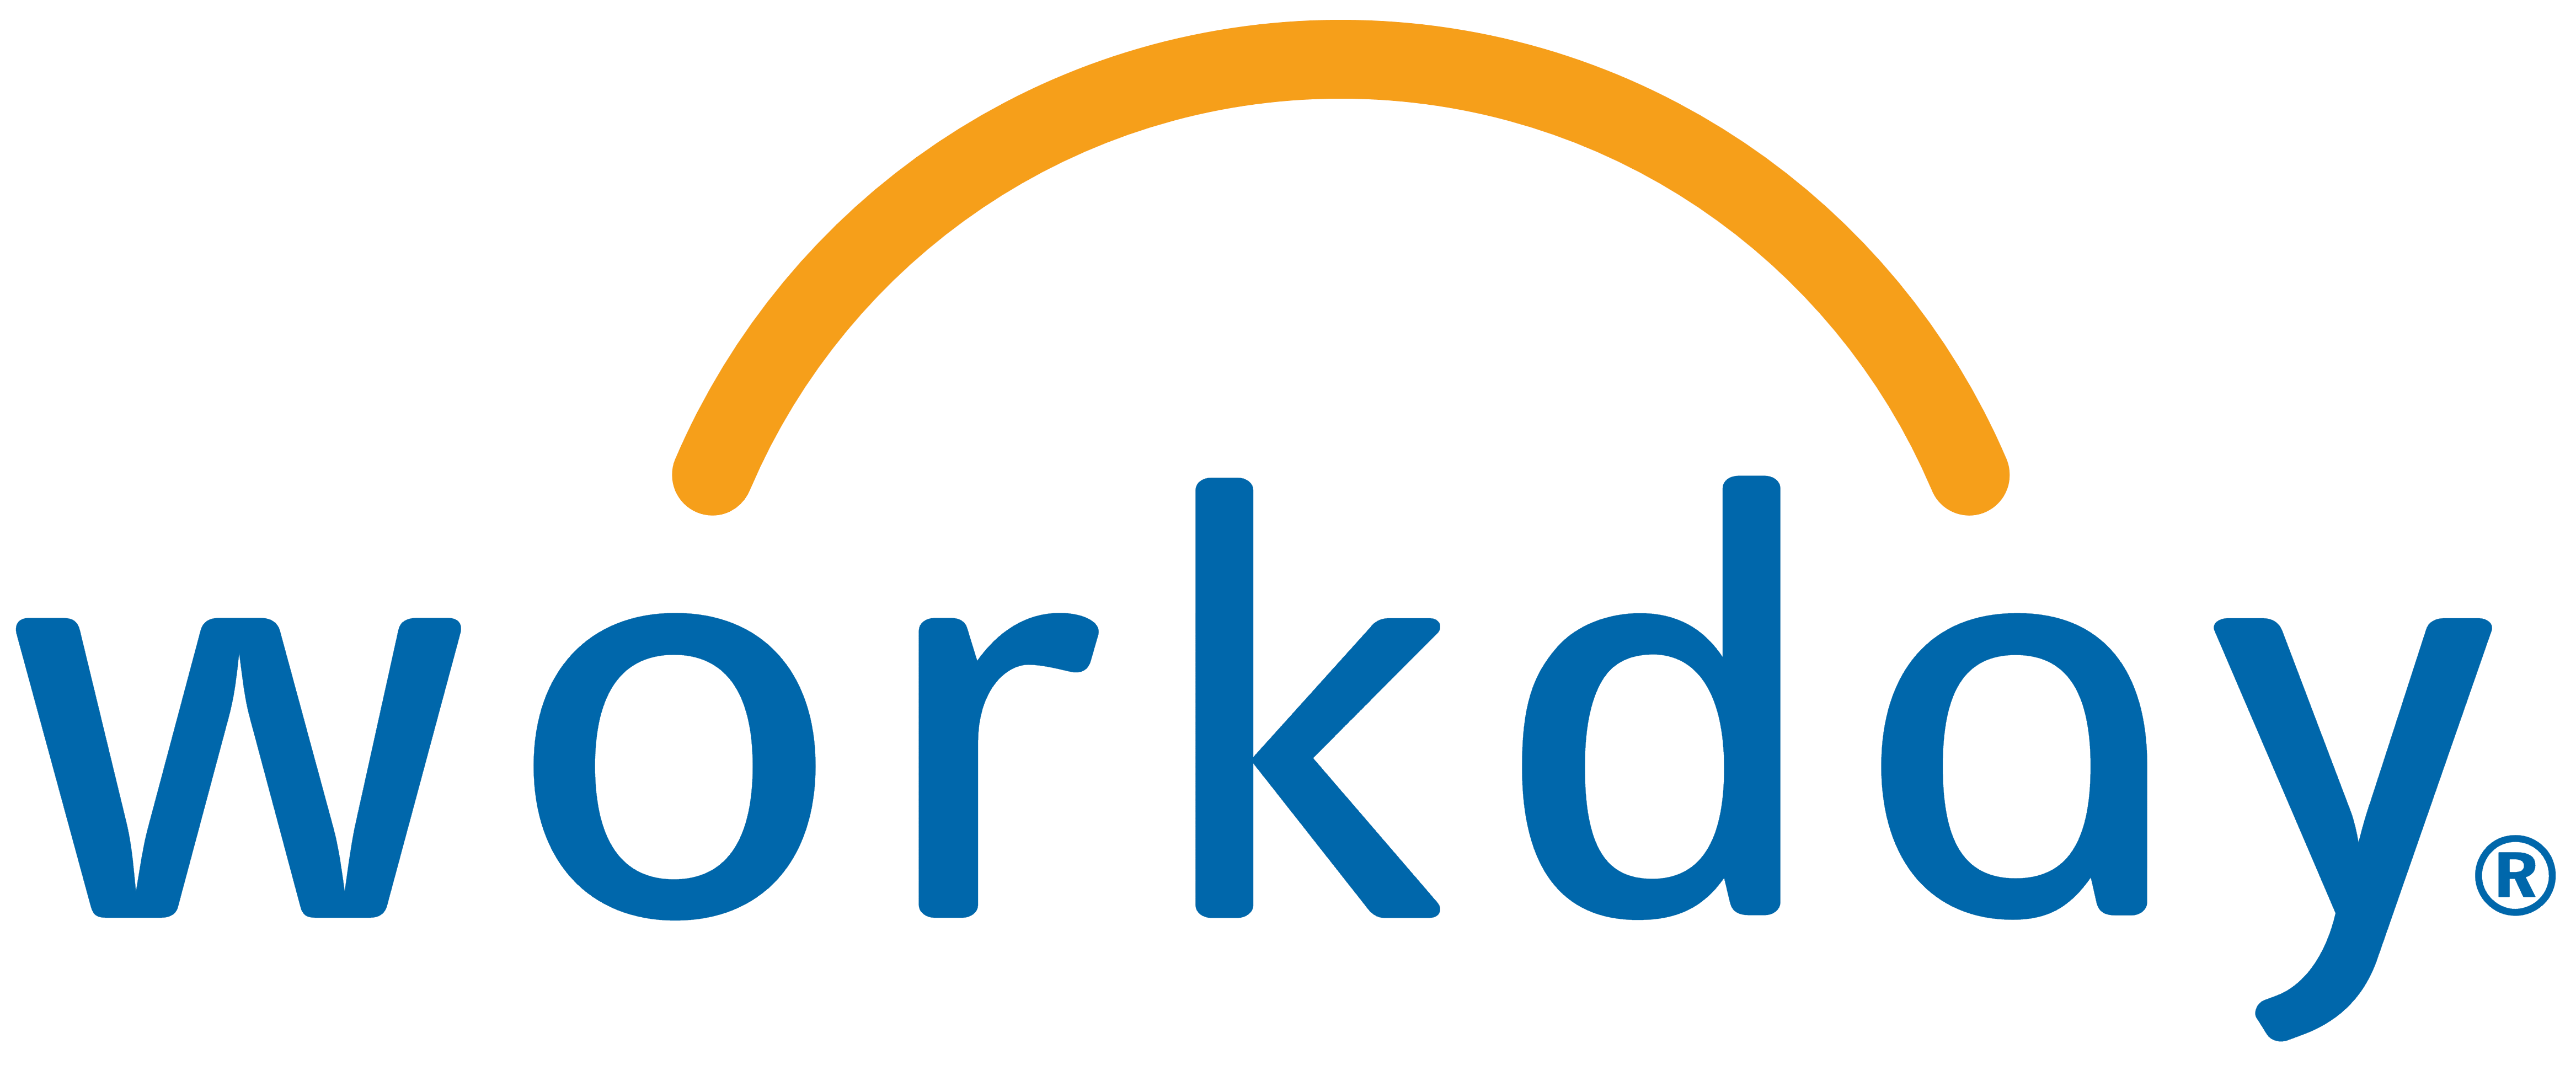 Workday logo, logotype